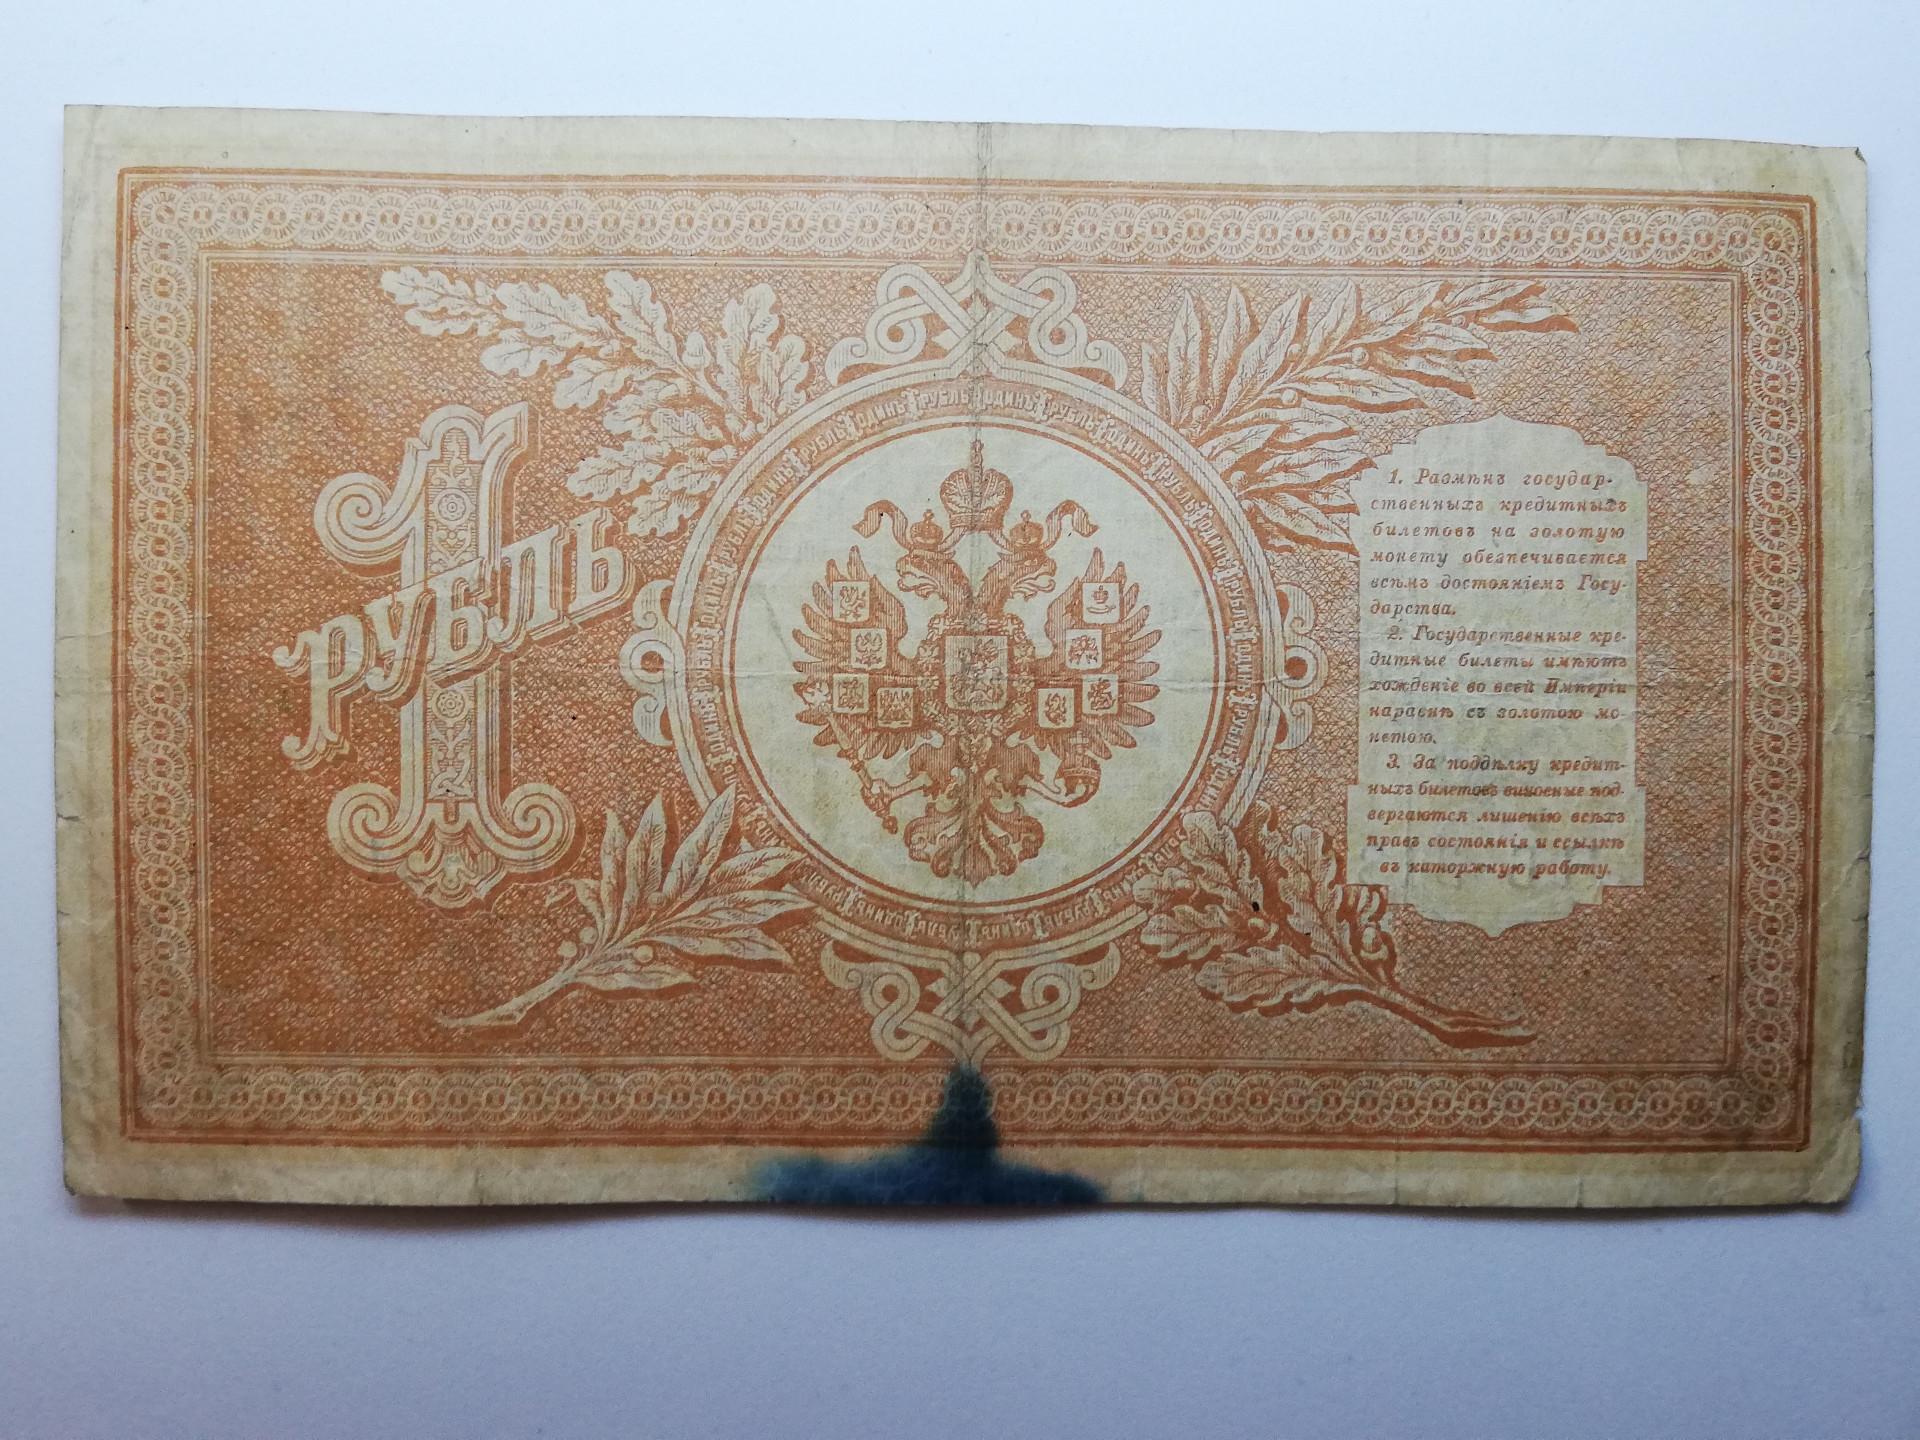 1898 vienas rublis